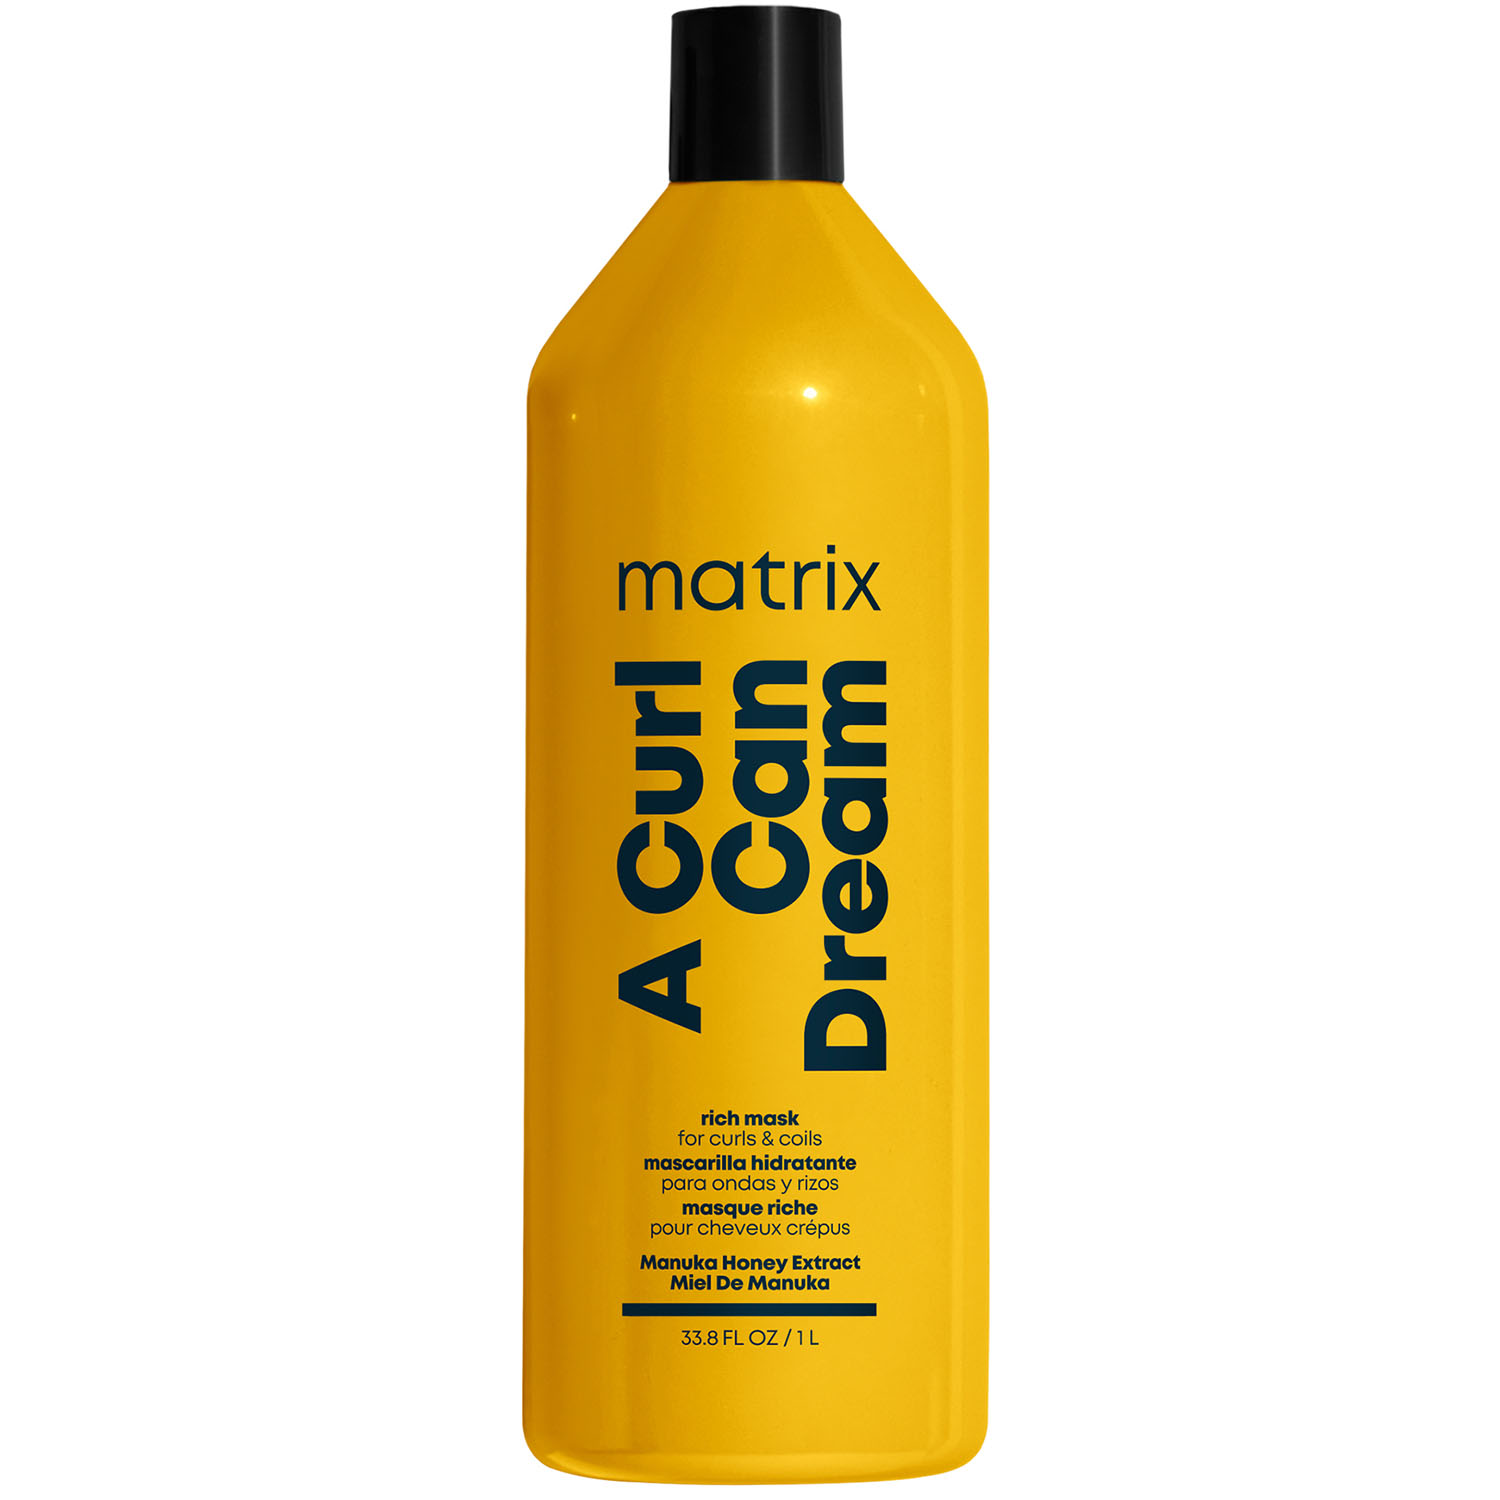 Matrix Маска с медом манука для интенсивного увлажнения кудрявых и вьющихся волос, 1000 мл (Matrix, Total results) matrix curl can dream шампунь для кудрявых волос с медом 300 мл